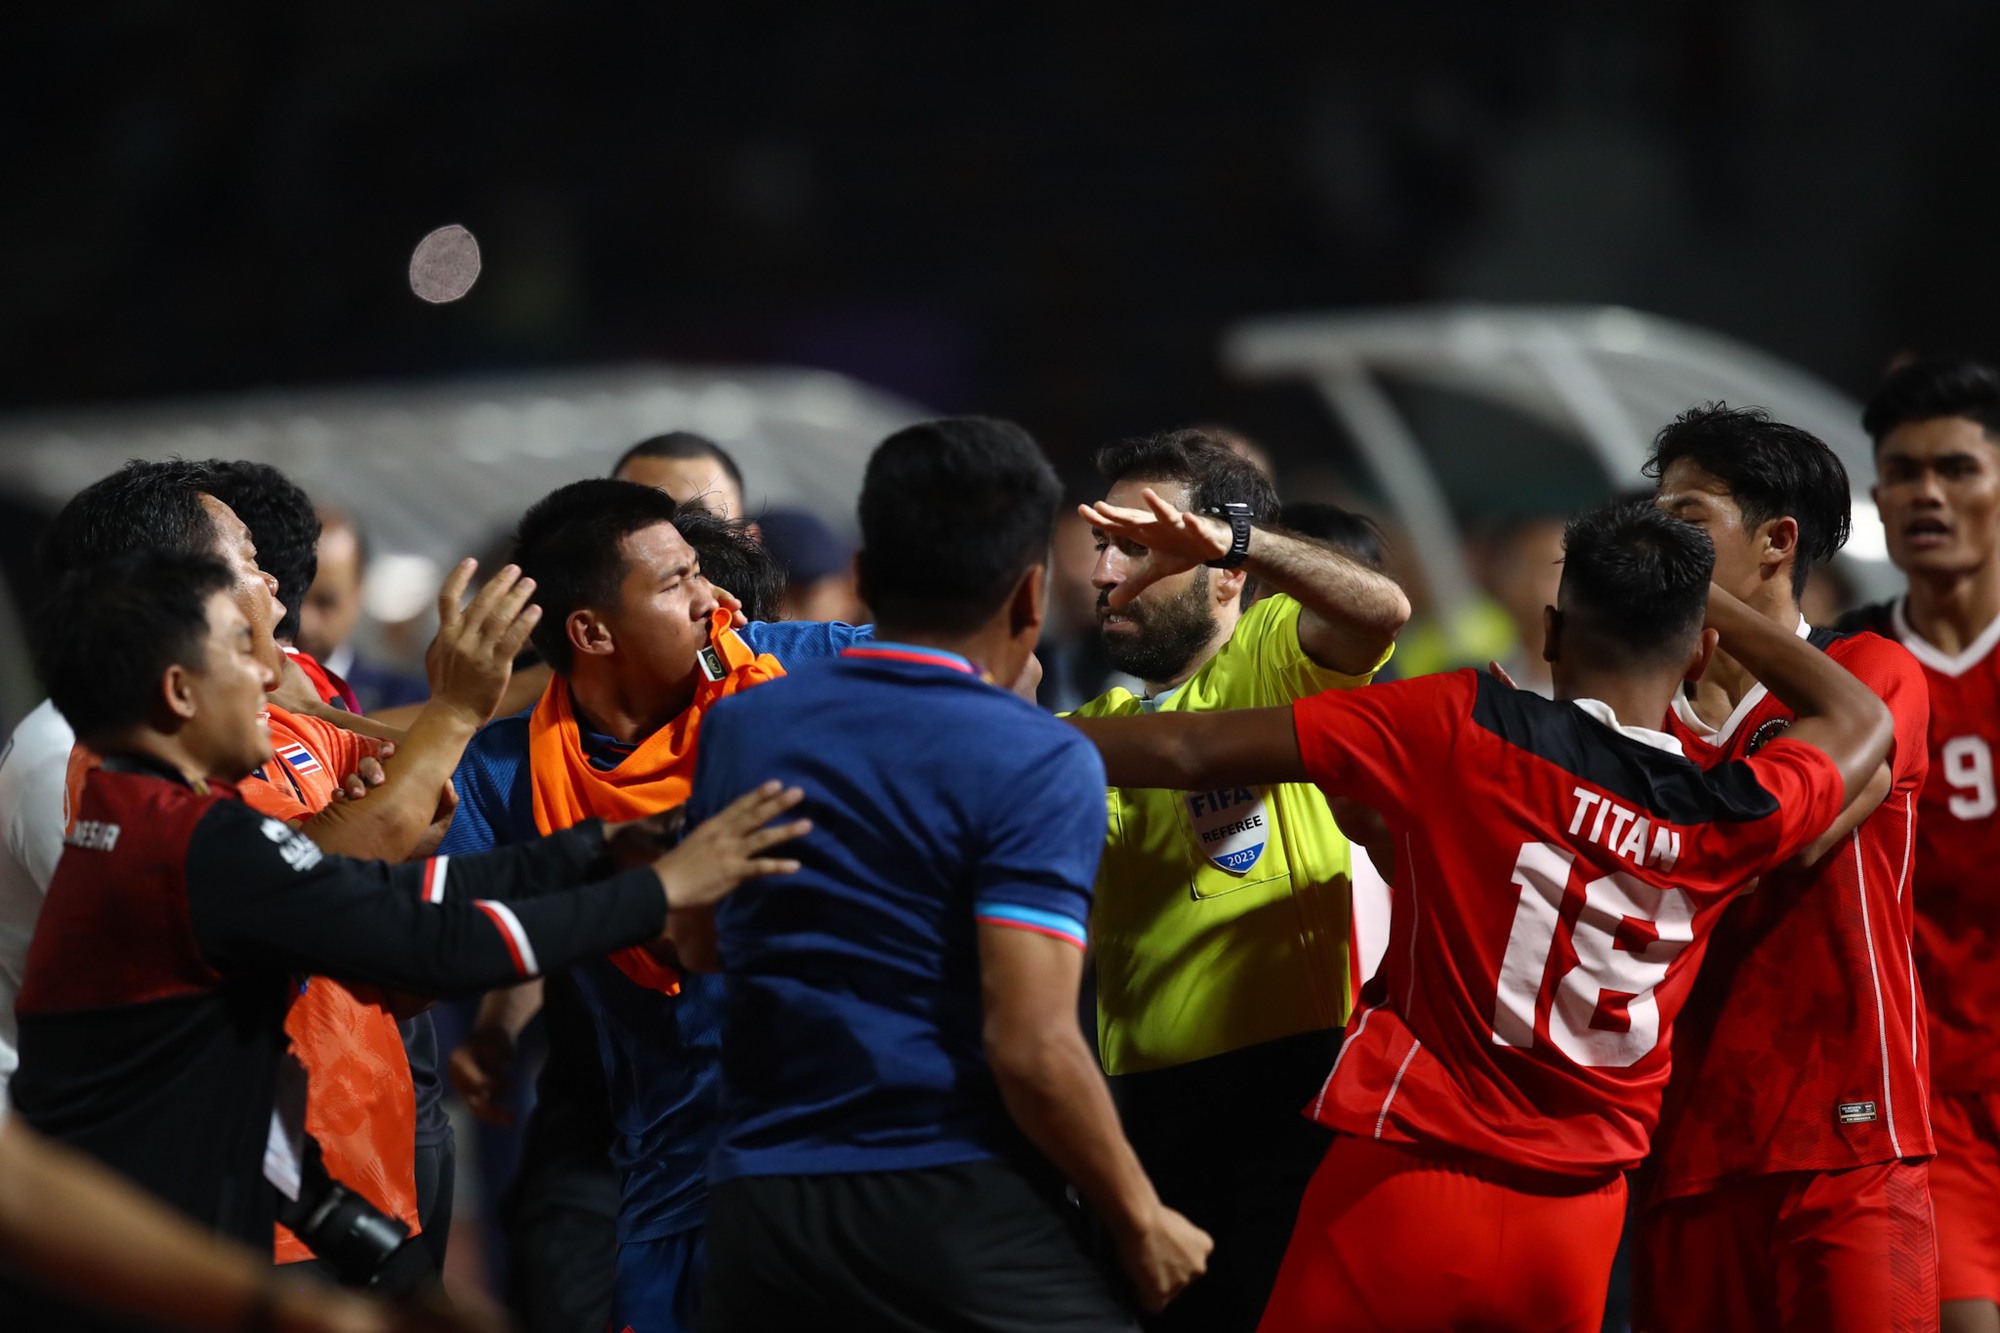 U22 Indonesia: Trưởng đoàn chảy máu miệng, cầu thủ rách môi sau trận chung kết SEA Games kinh hoàng - Ảnh 5.